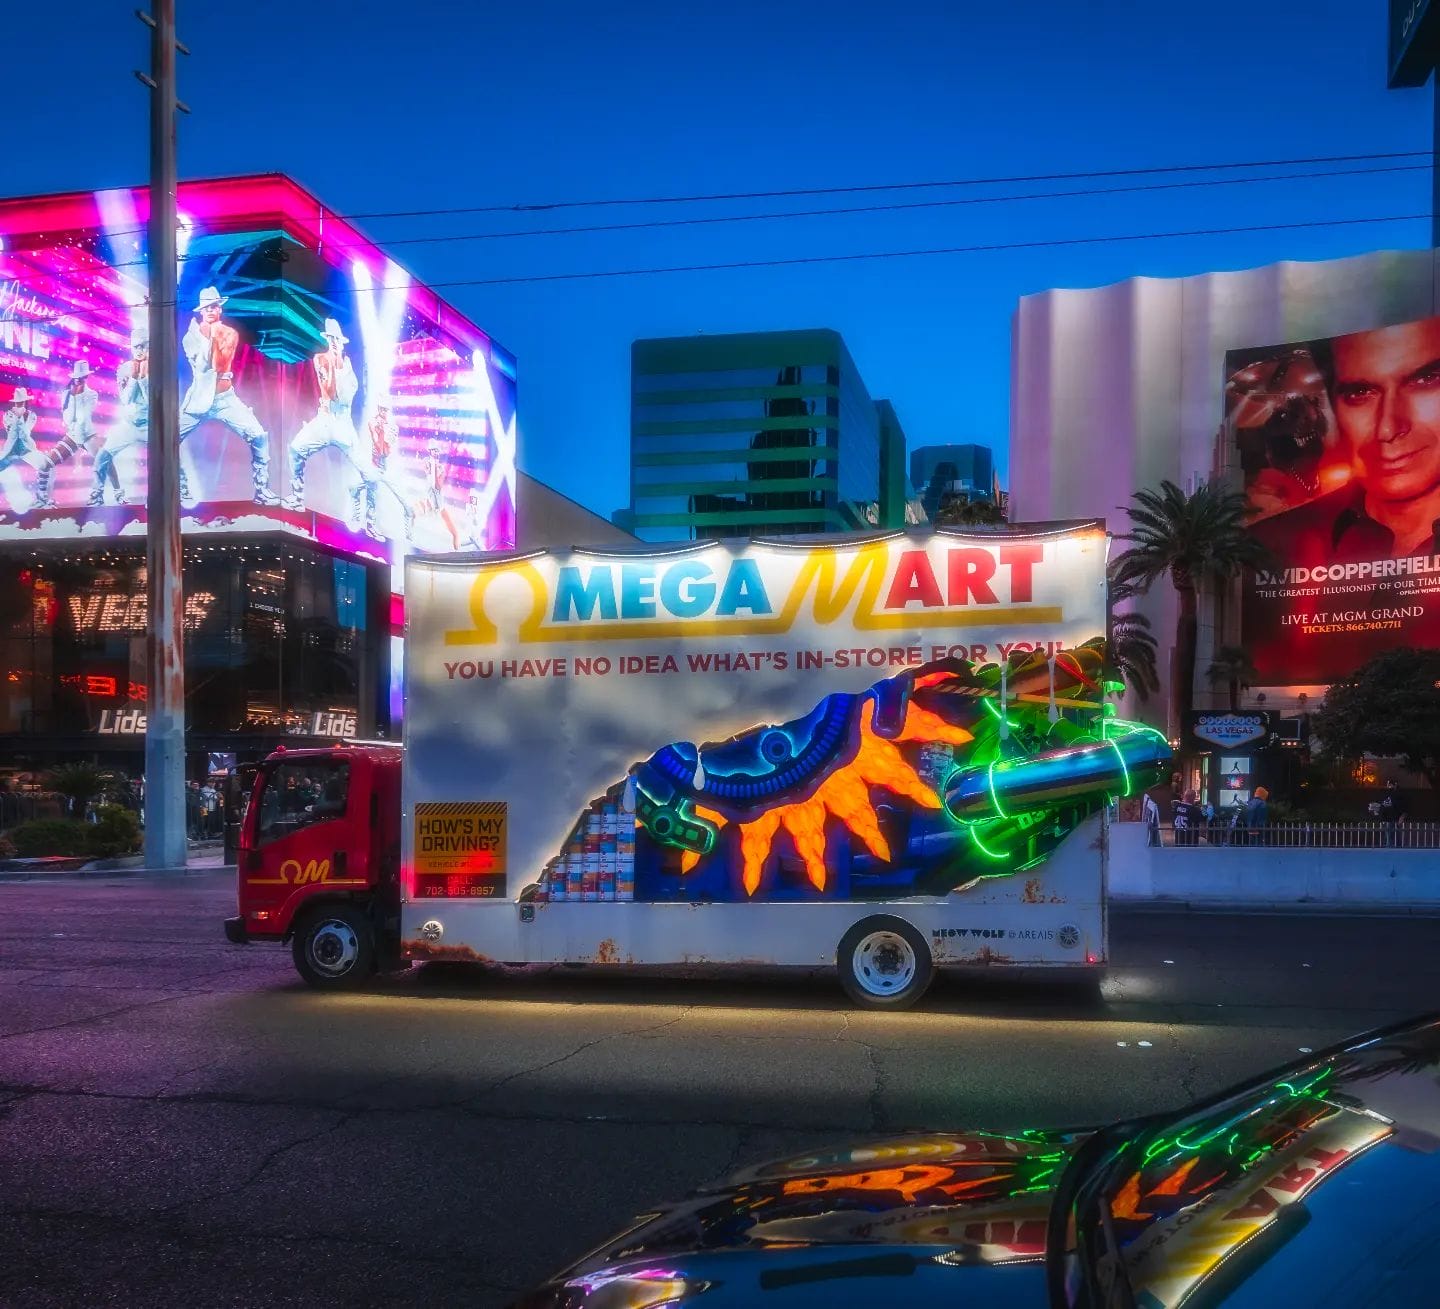 Illuminated advertising truck on vibrant city street at dusk.